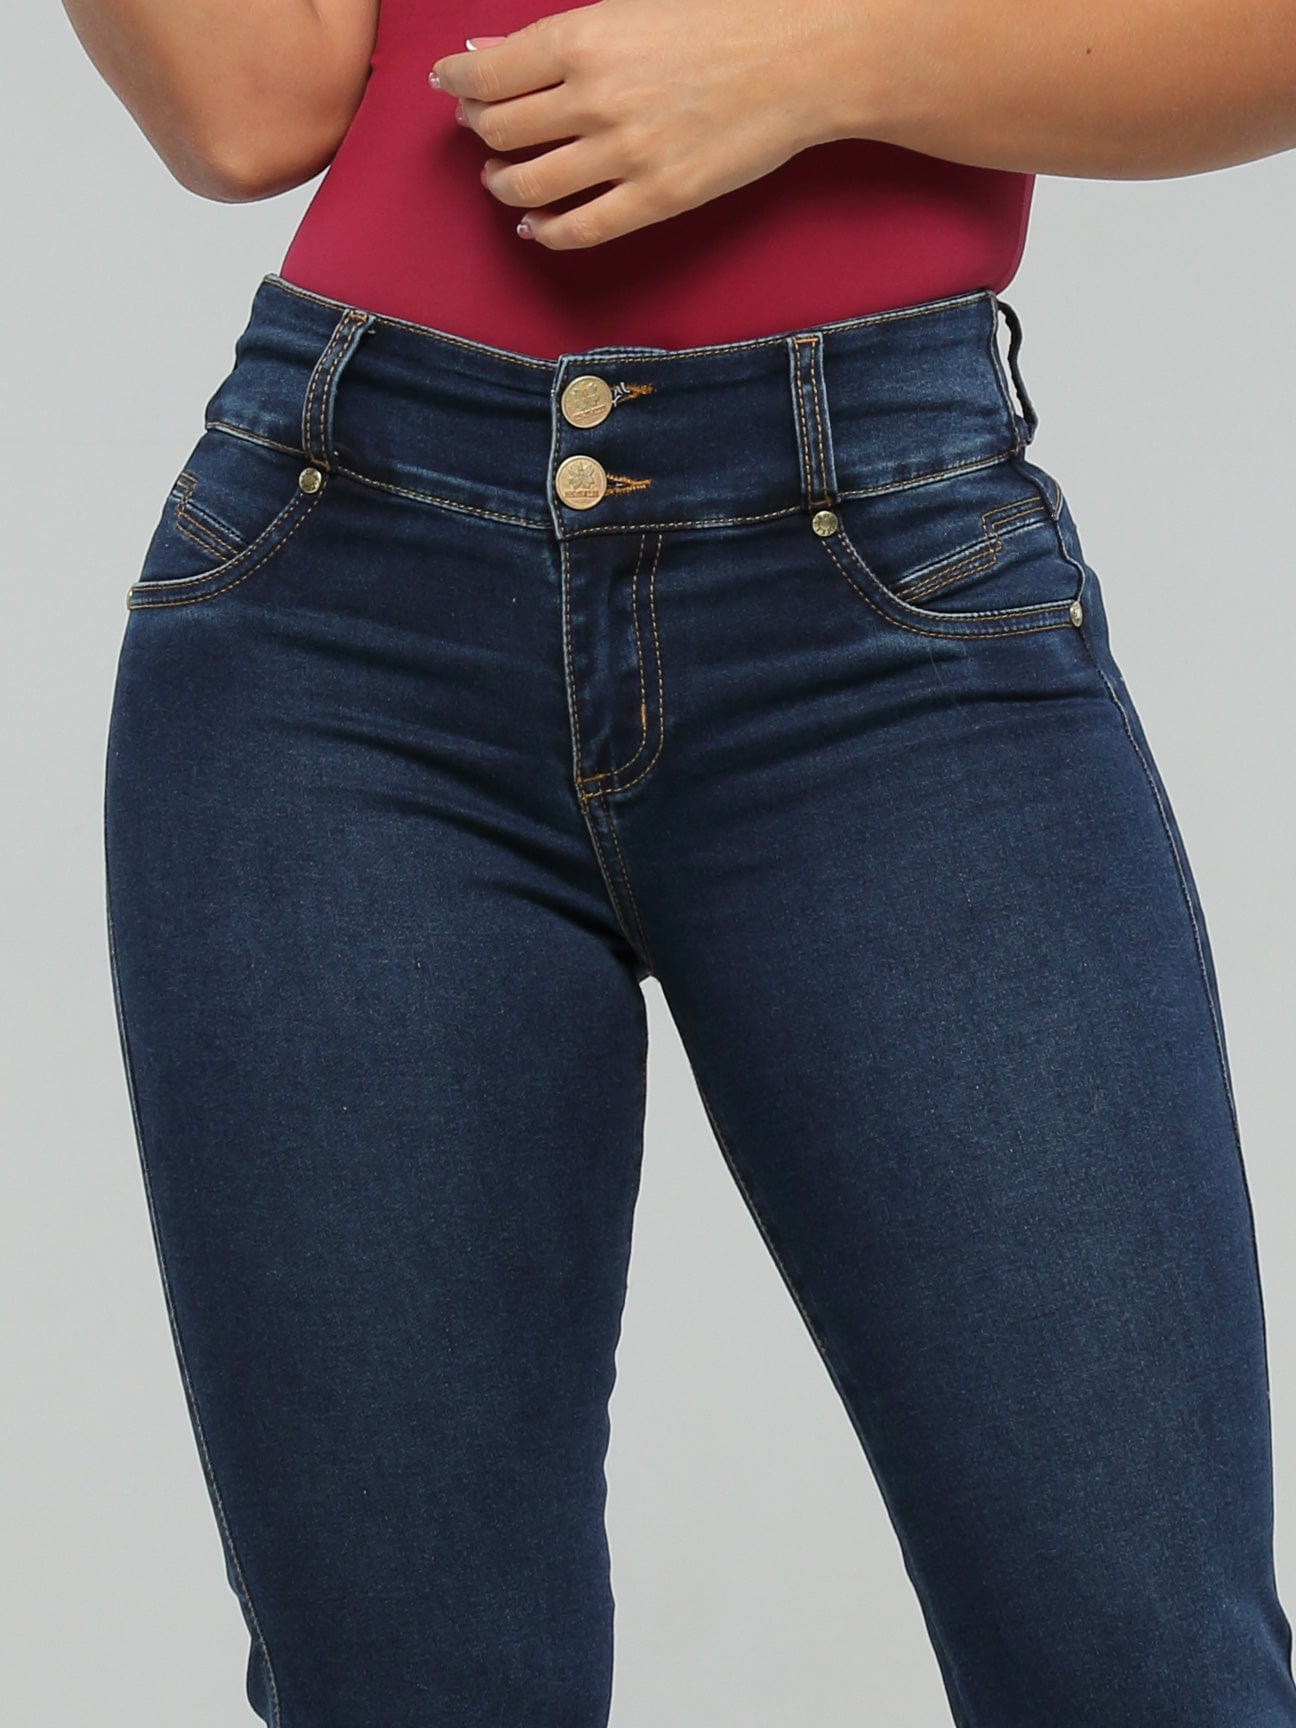 Tabitha Butt Lift Jeans 15164